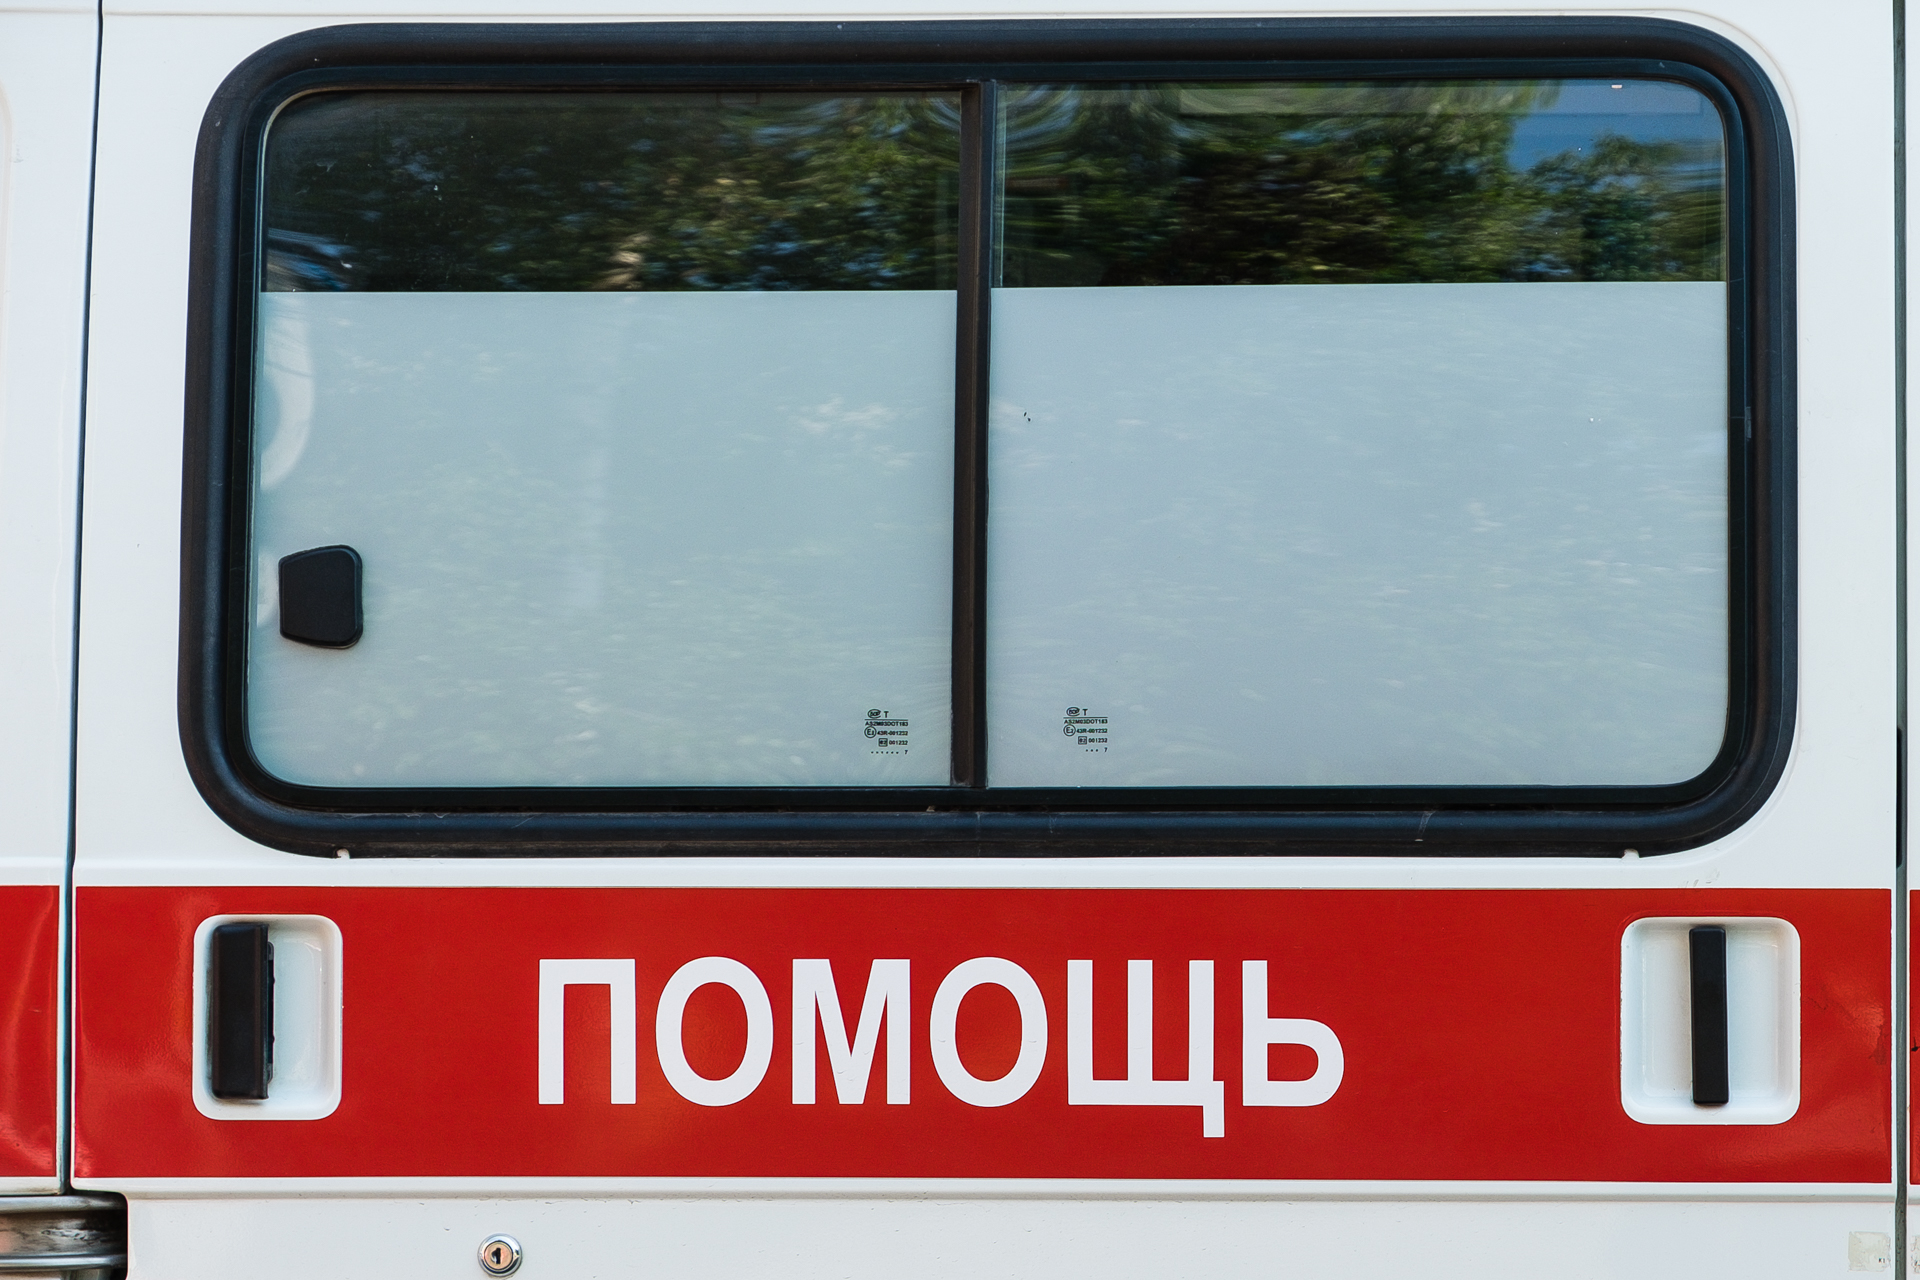 Скорая: в Перми столкнулись два автобуса, есть пострадавшие. Собираем информацию в режиме онлайн